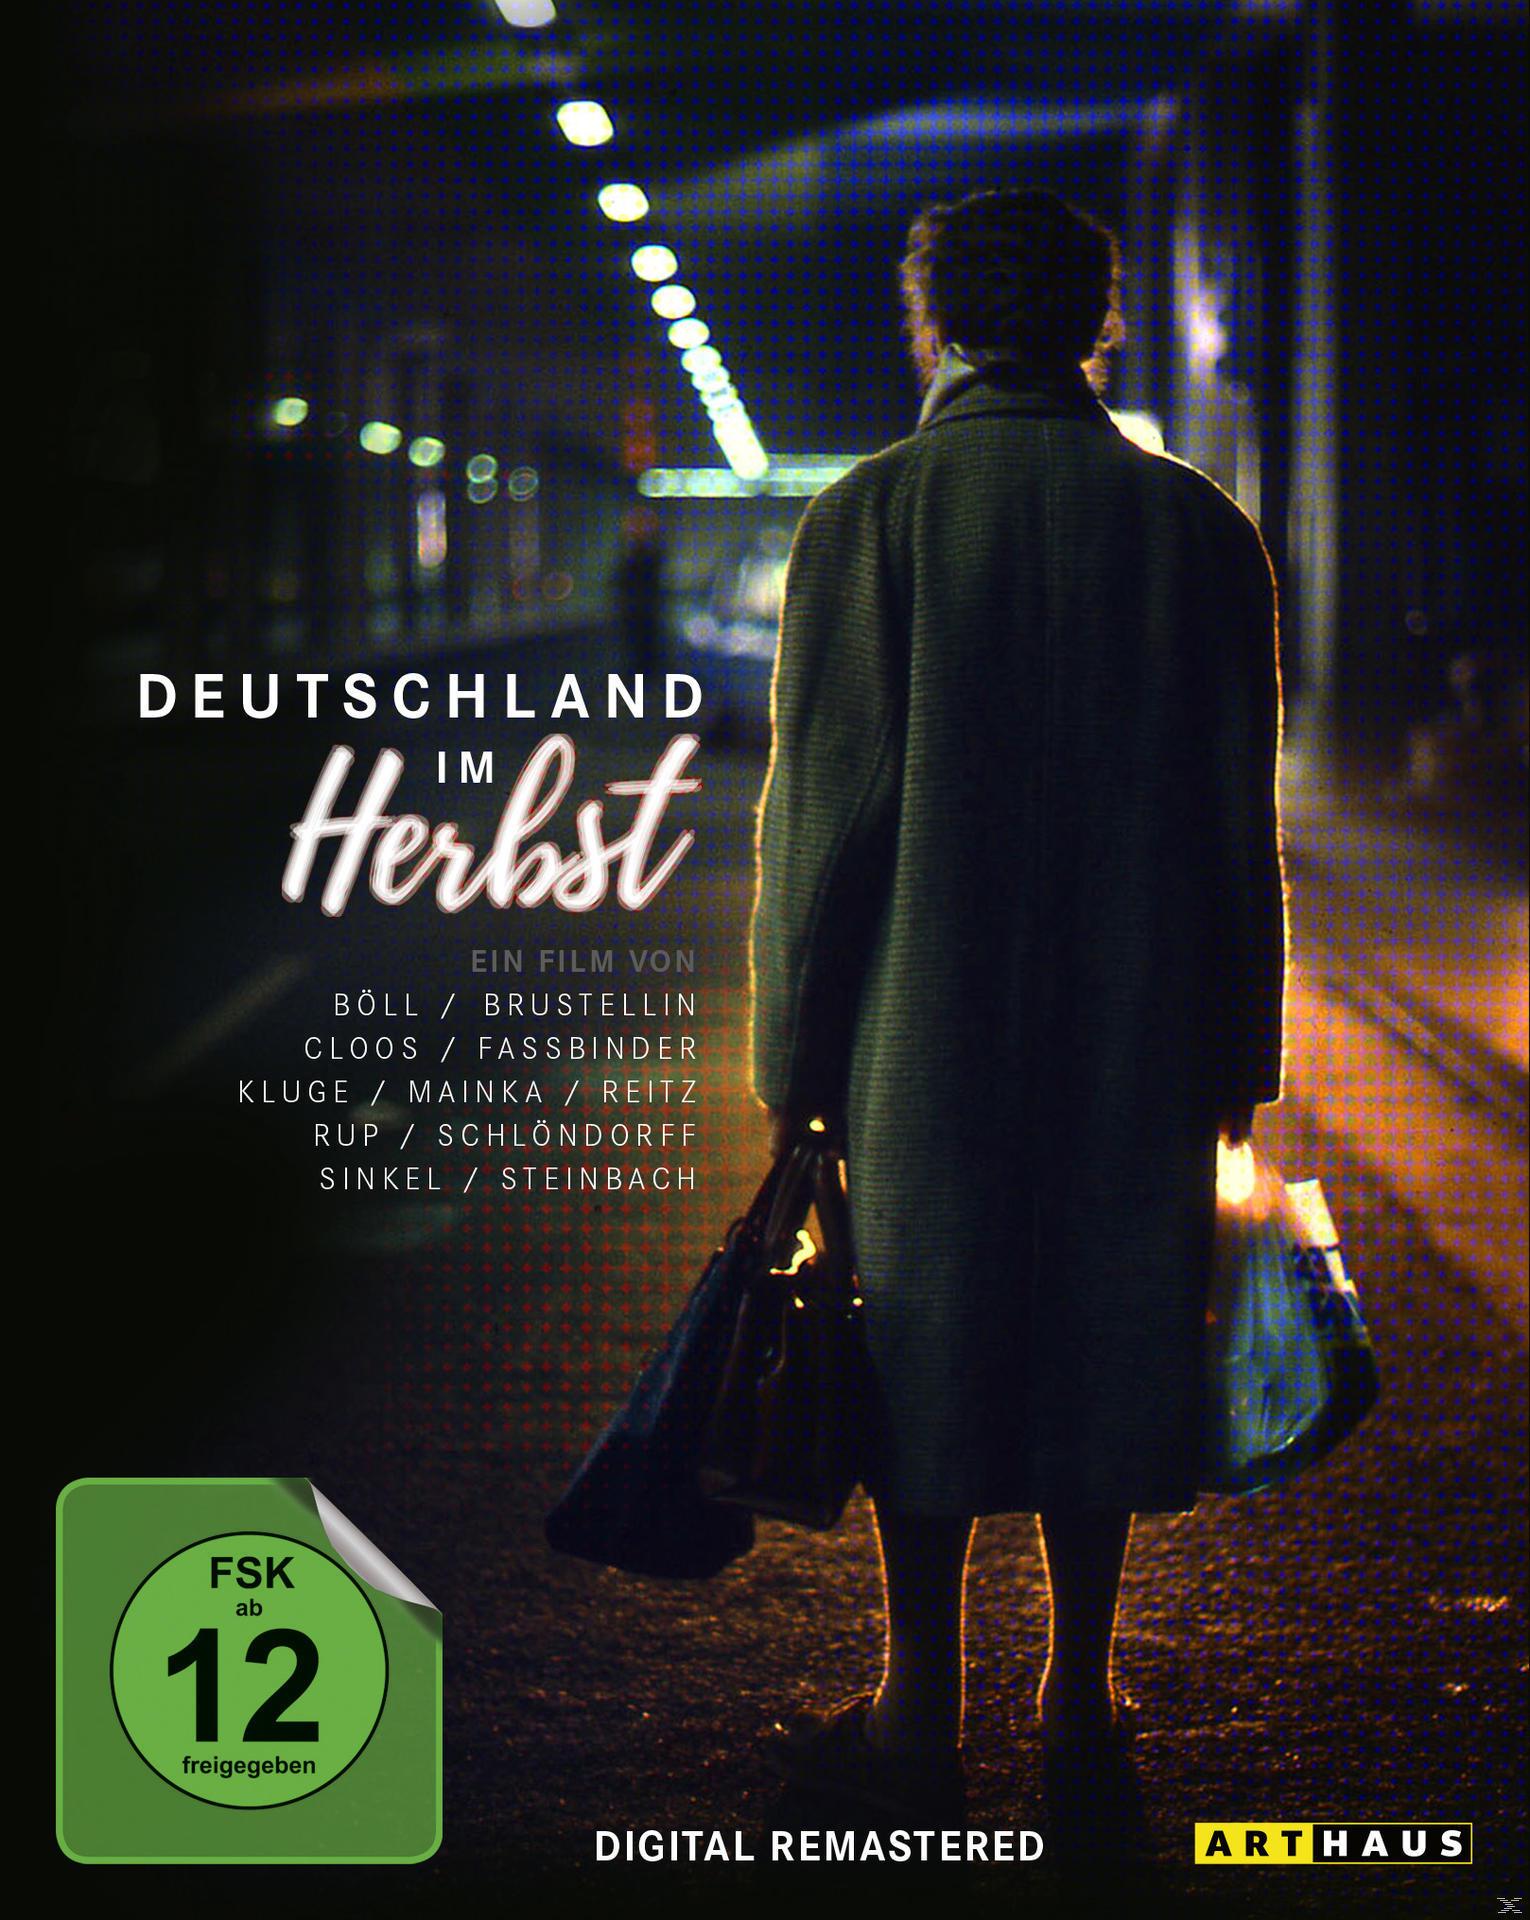 Deutschland / Herbst im Edition Special Blu-ray